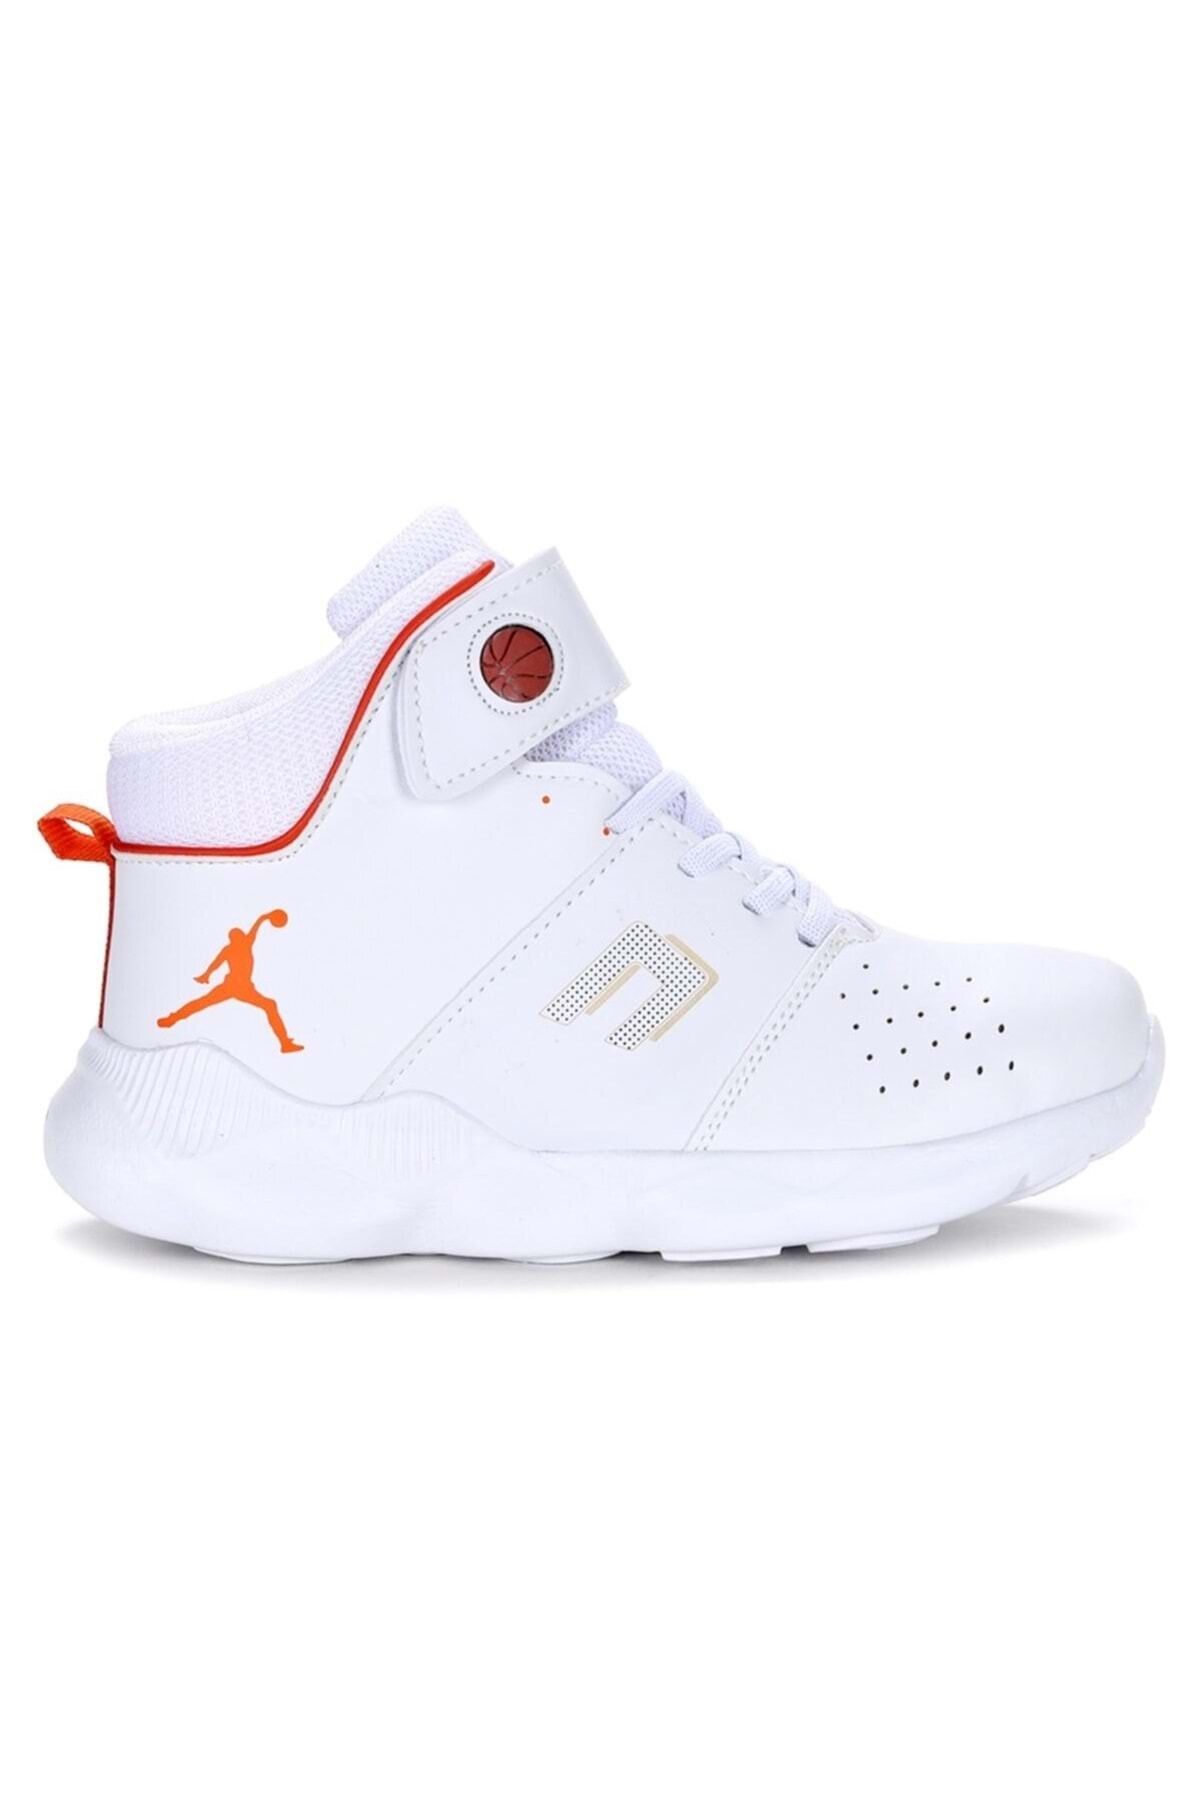 Kids Club Shoes Cool Jordan Arizon Unisex Çocuk Basketbol Ayakkabısı Beyaz